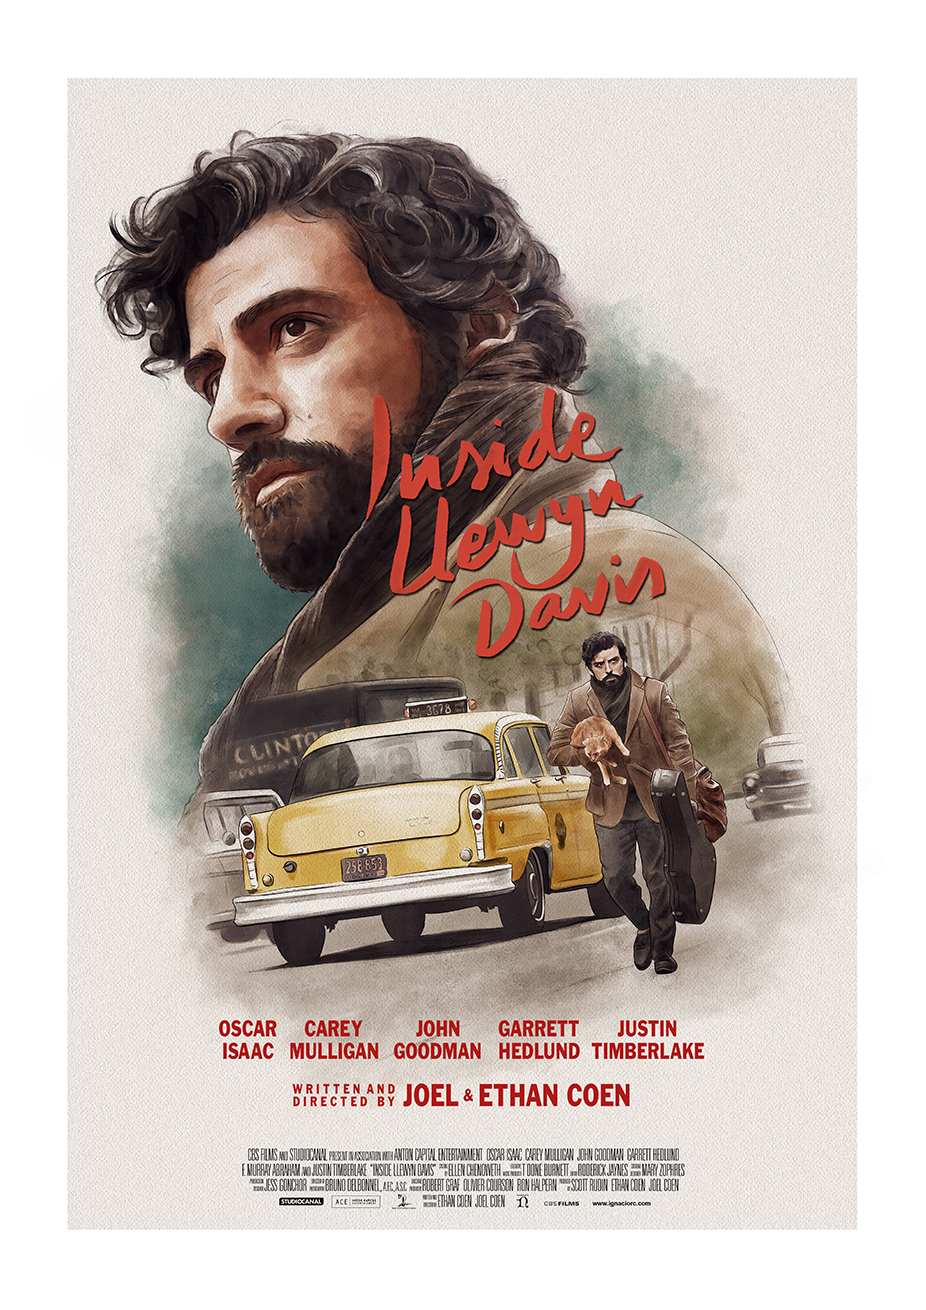 Movie Cinema Poster Art Print INSIDE LLEWYN DAVIS 2013 Oscar Isaac